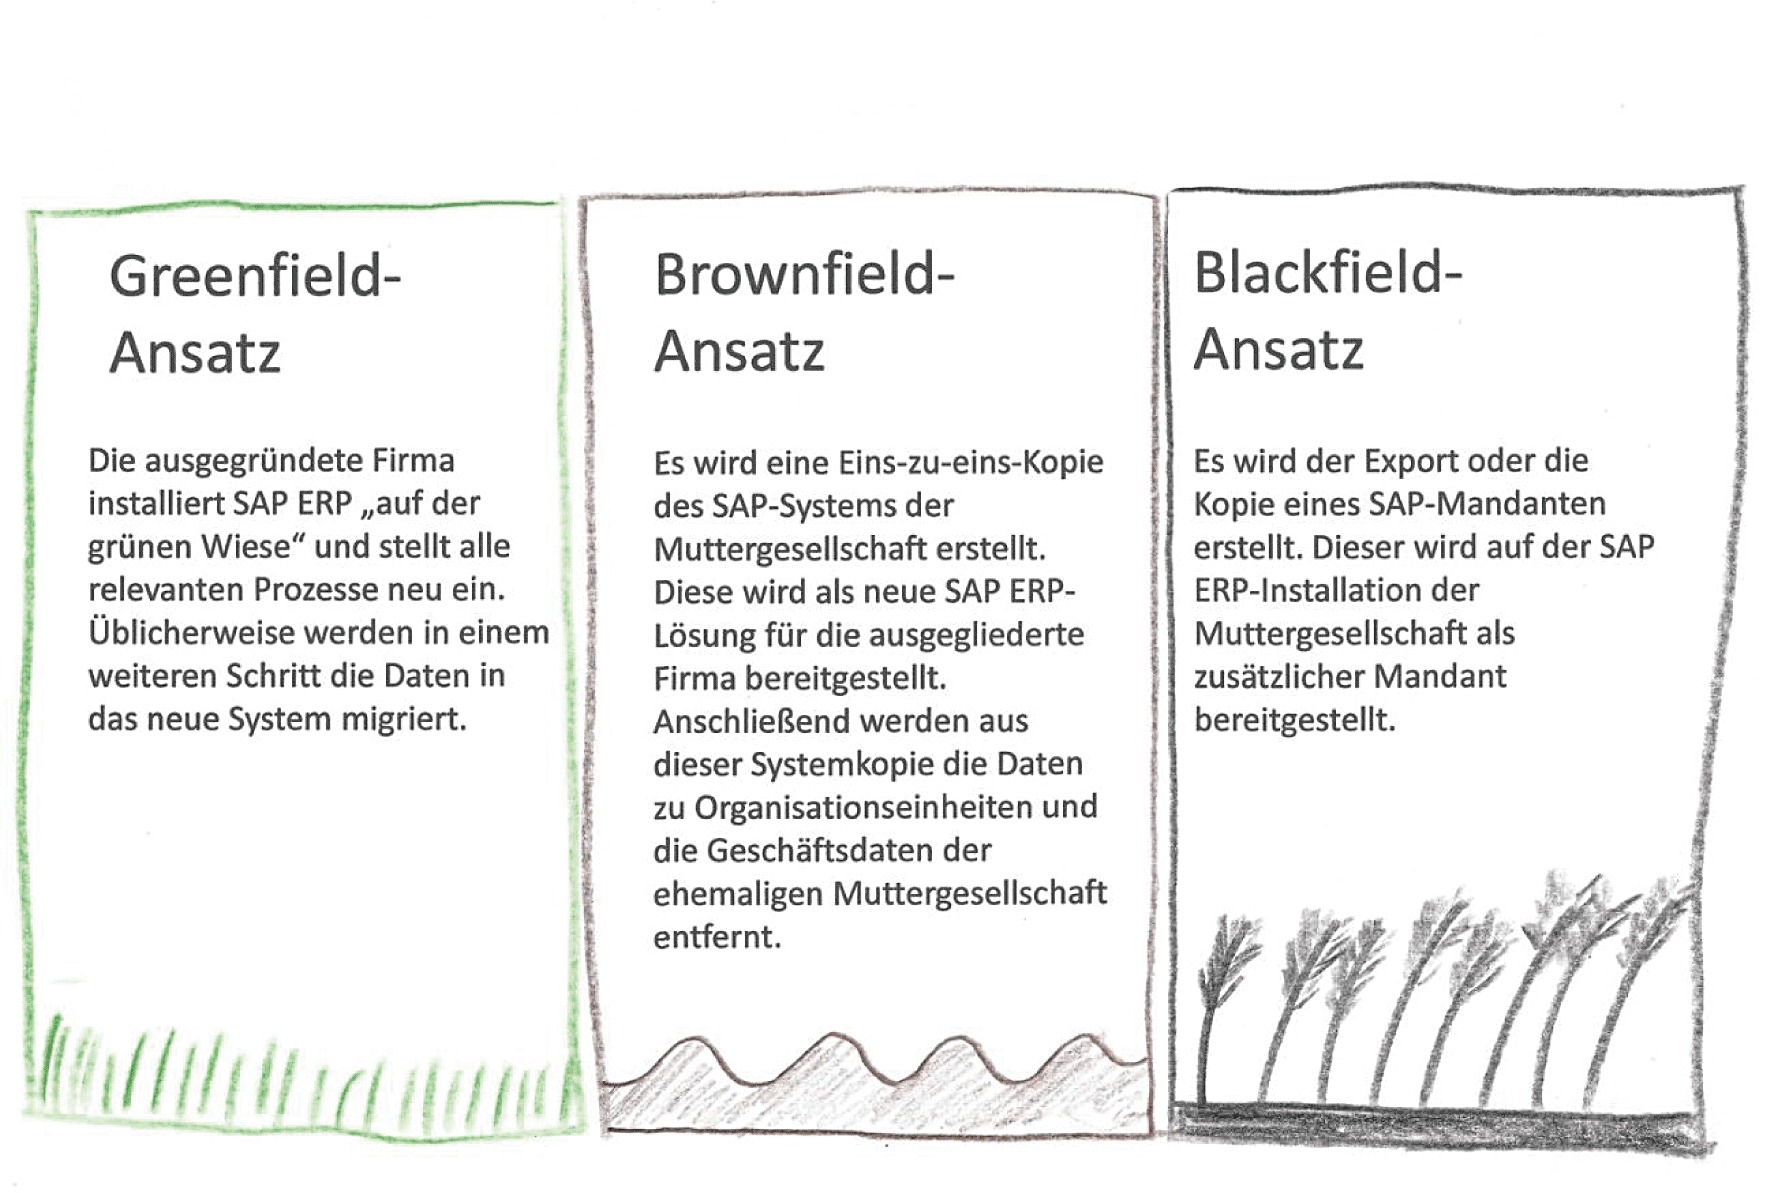 Greenfield-, Brownfield- und Blackfield-Ansatz am Beispiel von SAP ERP